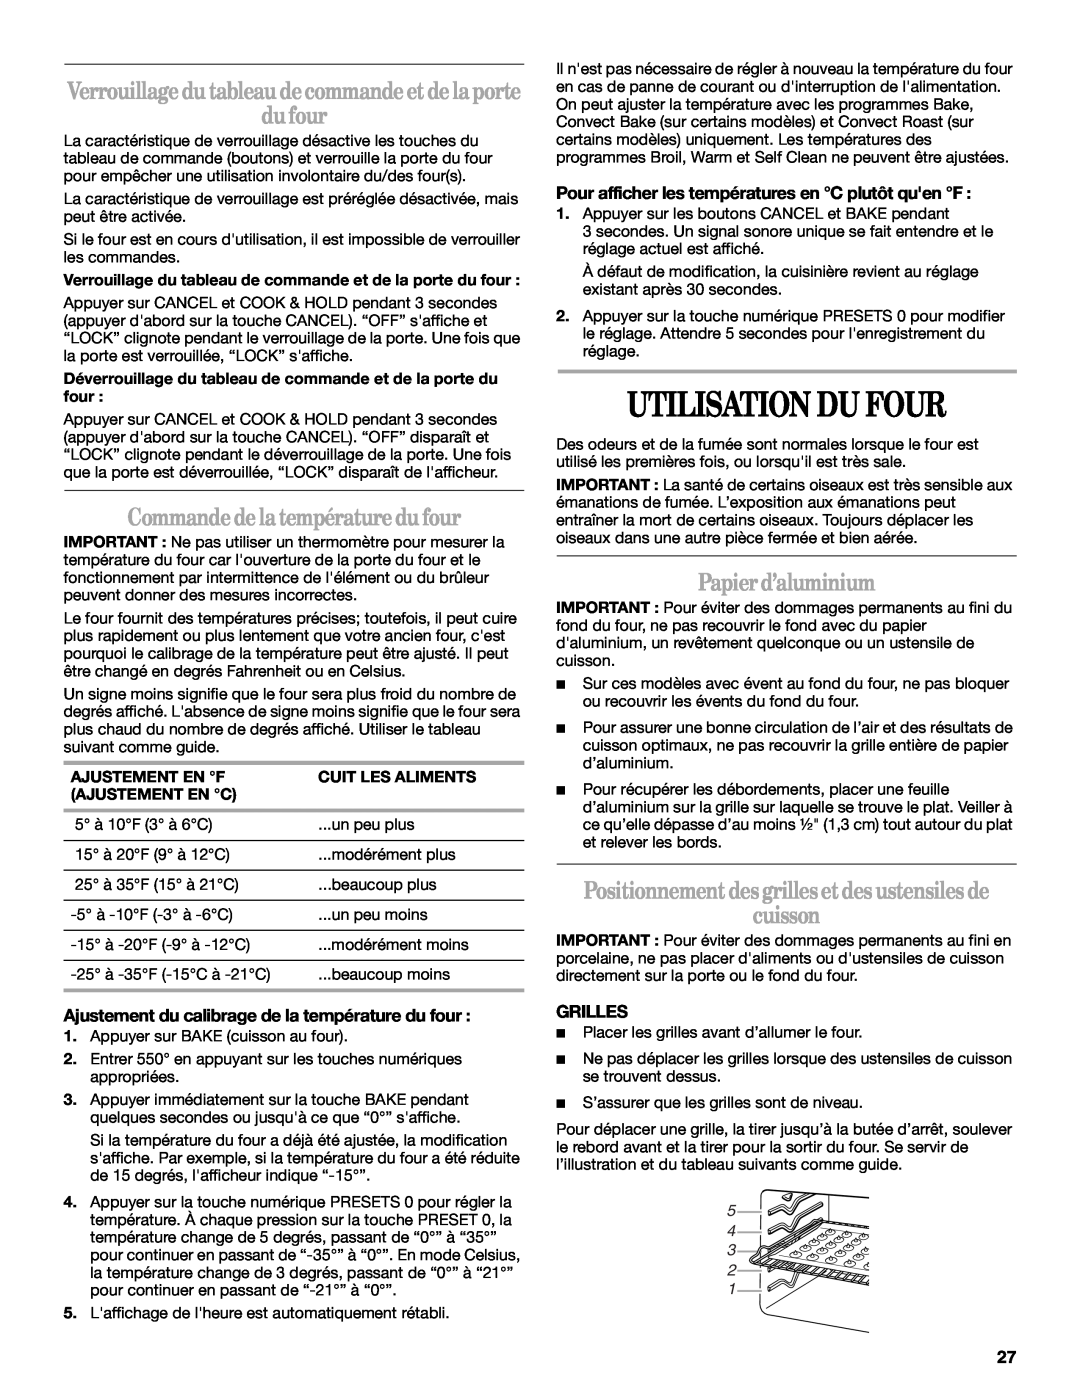 Whirlpool GY397LXUS manual Utilisation Du Four, Commandedelatempératuredufour, Papierd’aluminium, cuisson, Grilles 